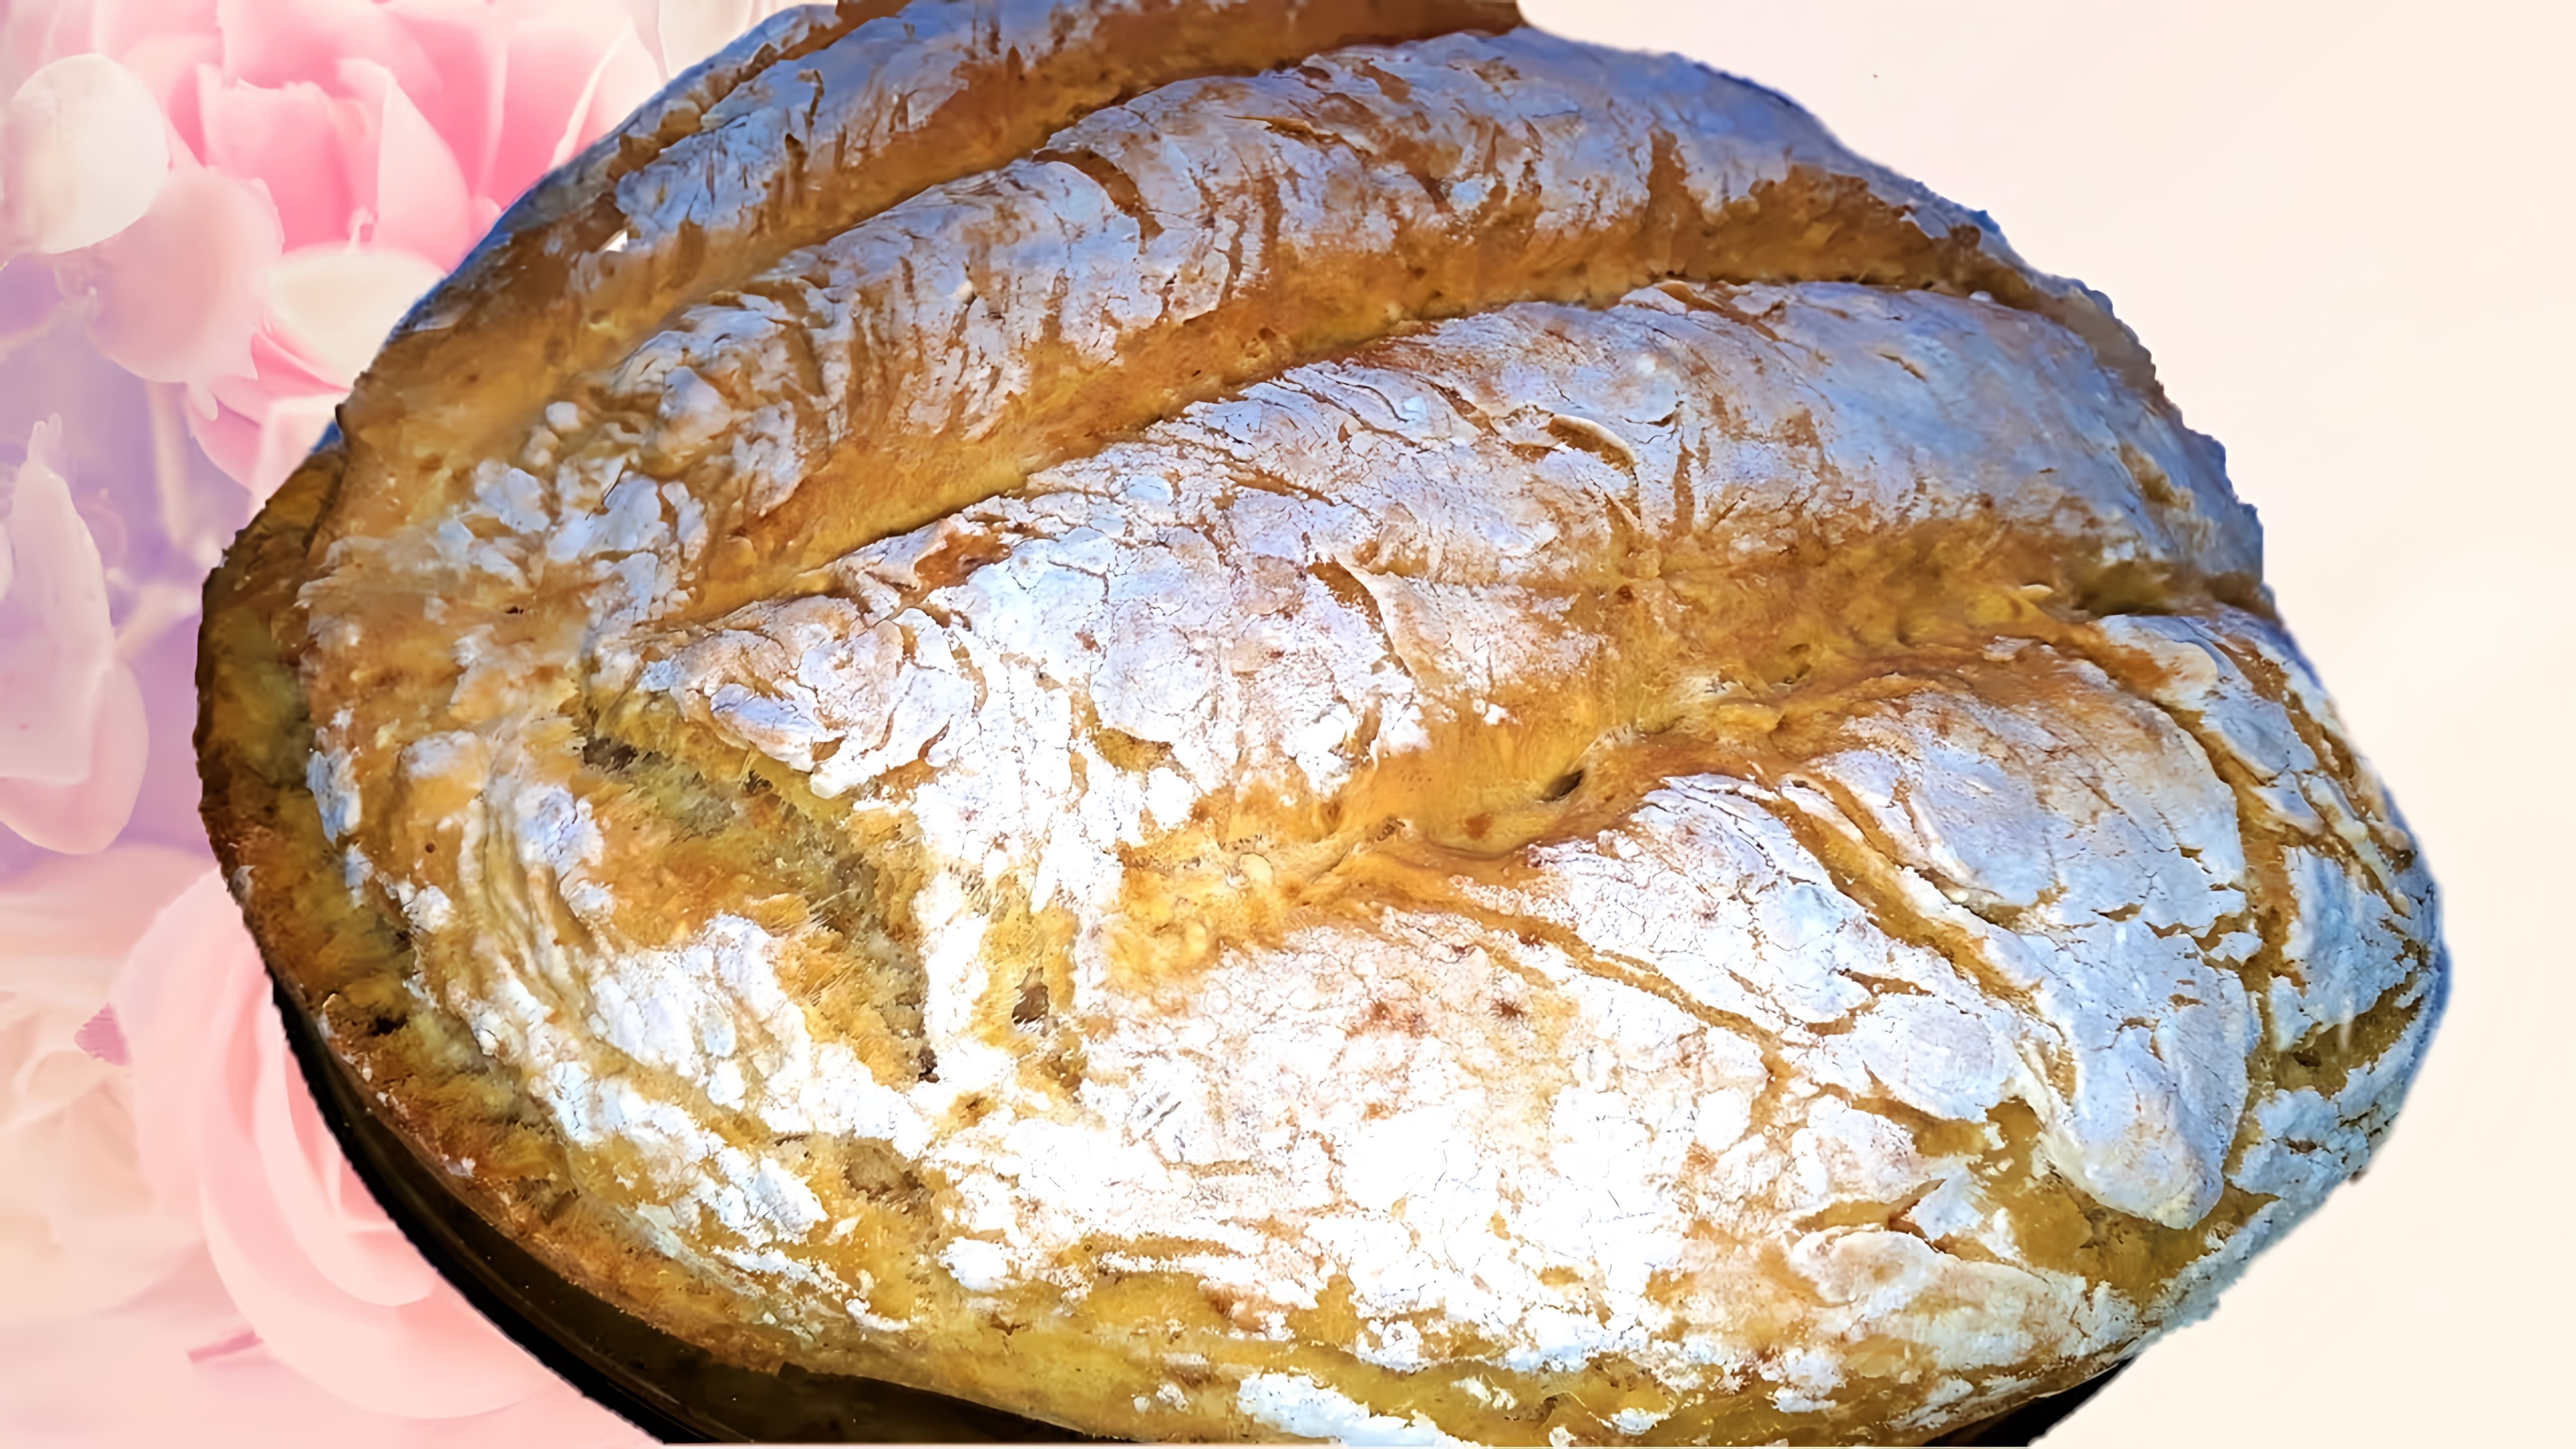 В этом видео демонстрируется рецепт приготовления хлеба без дрожжей, замеса и прочей канители